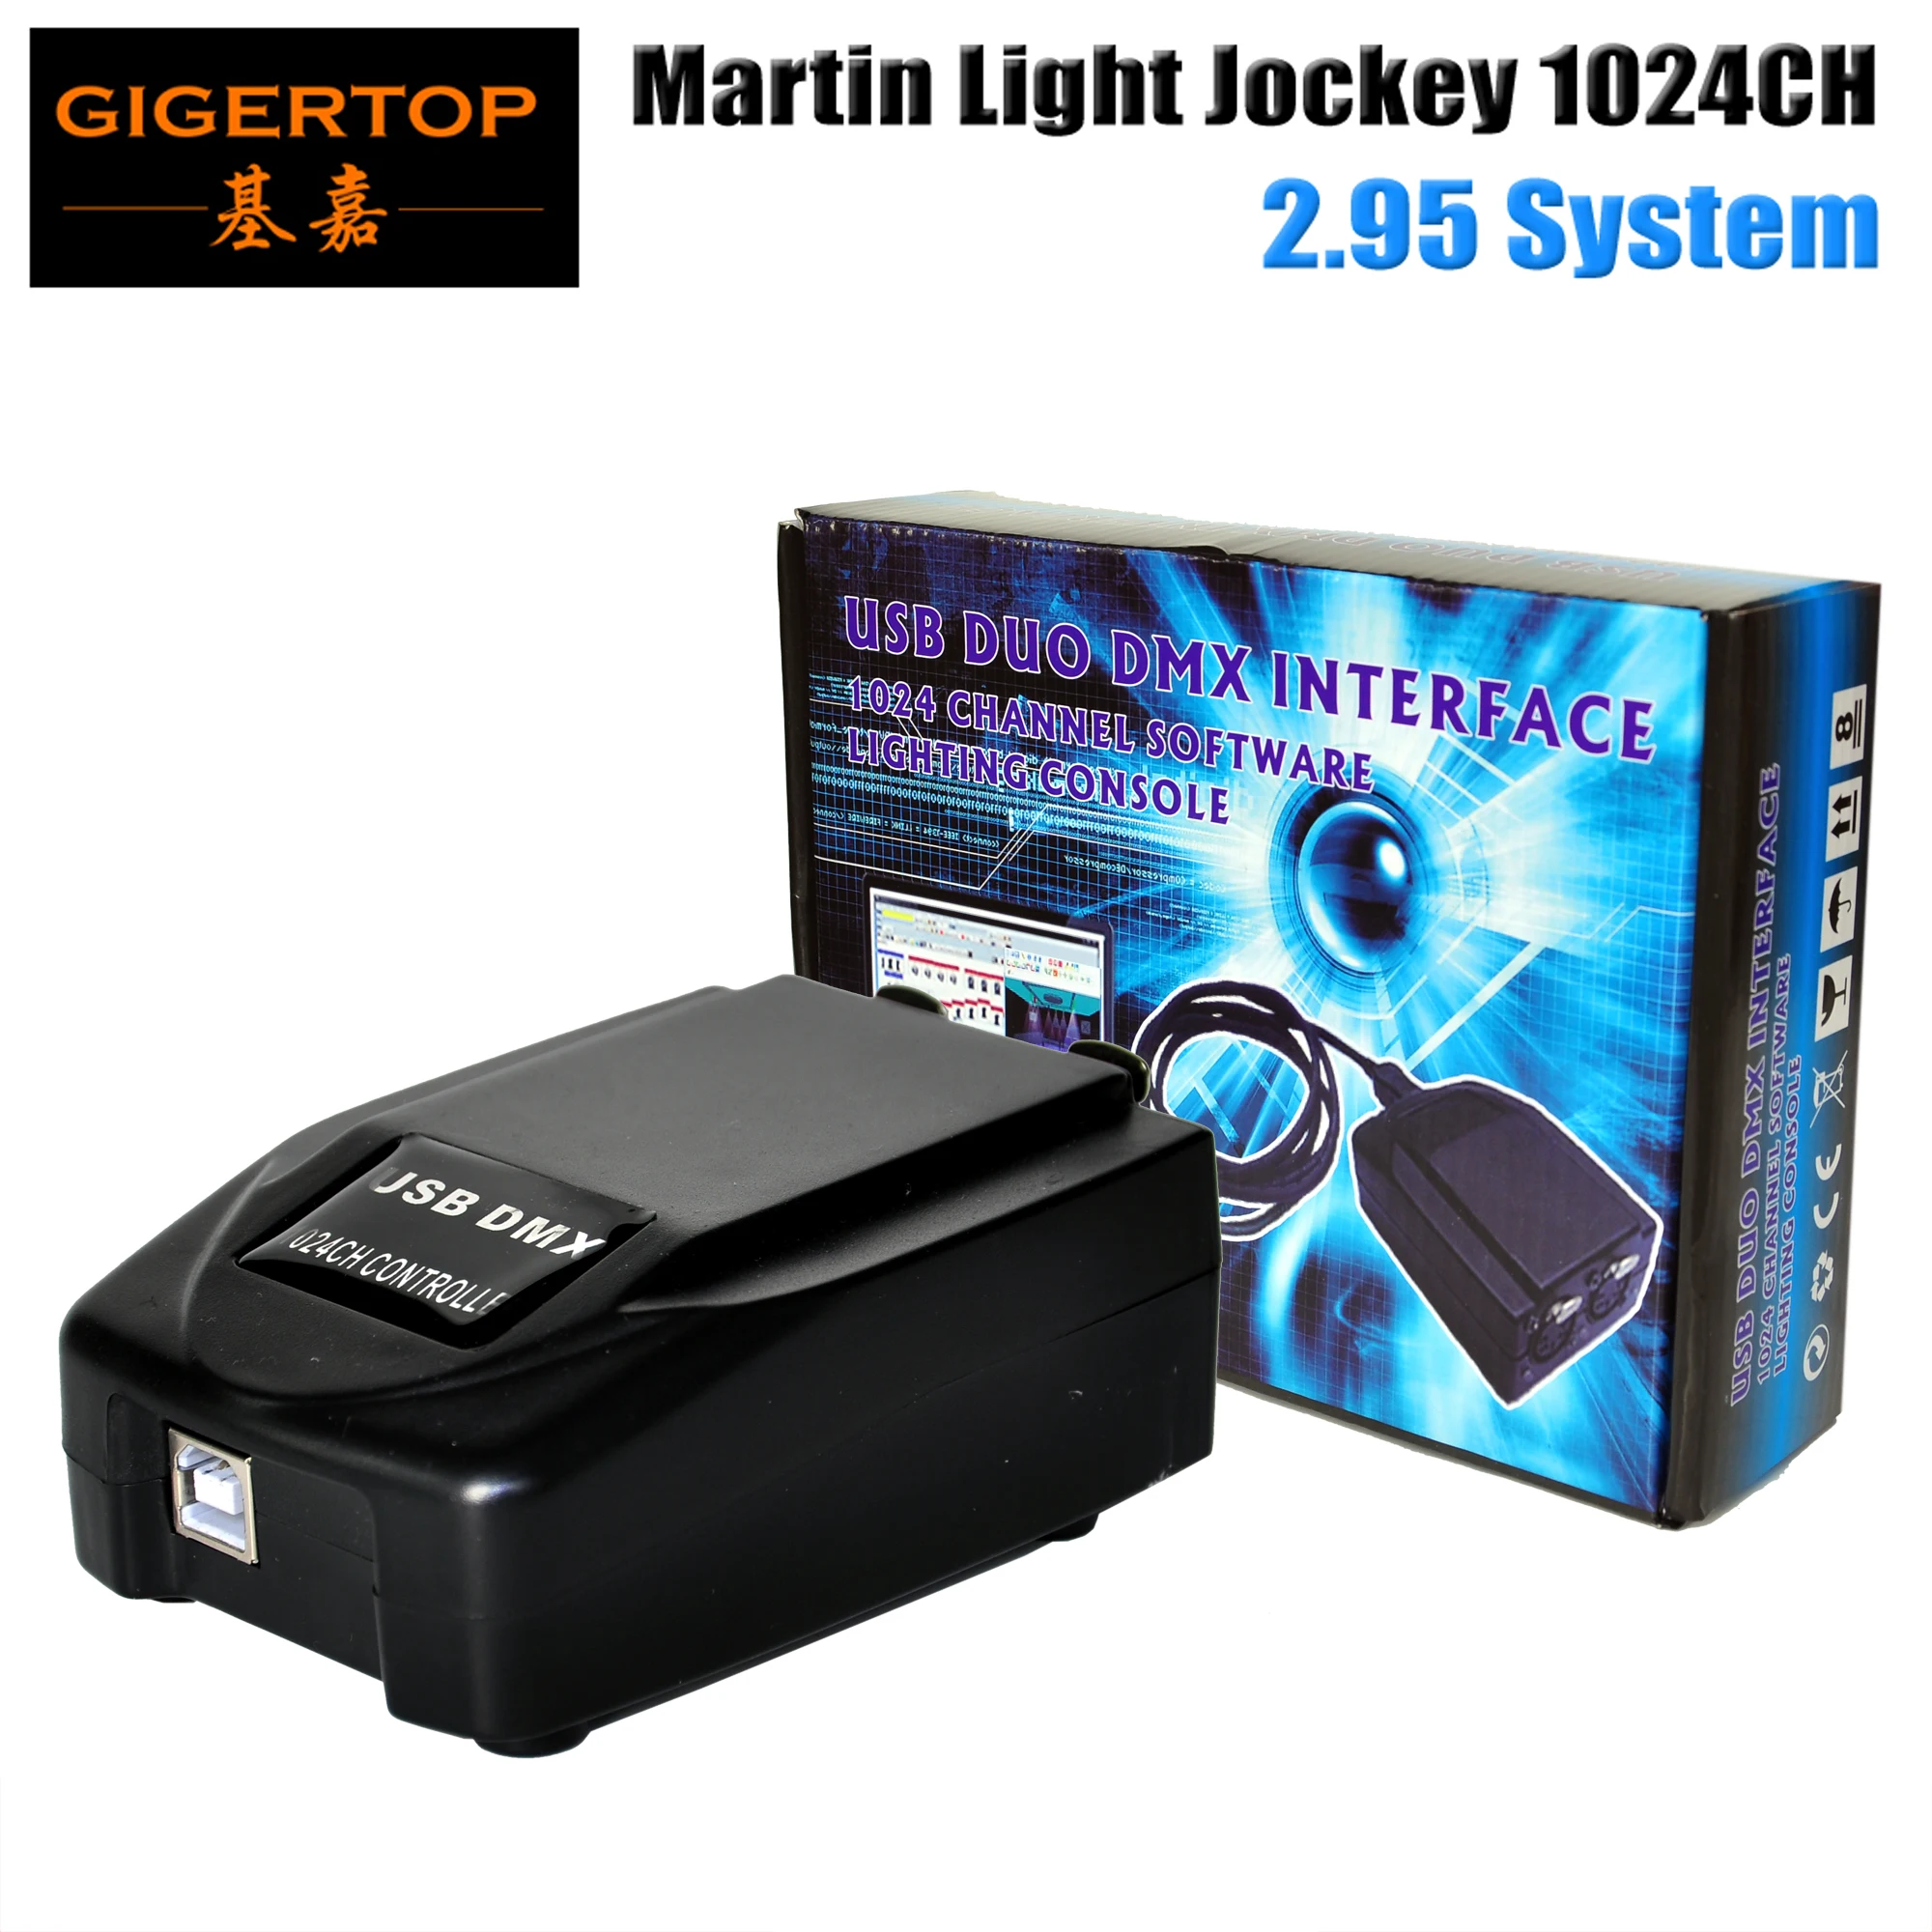 Мартин свет жокей 1024 USB контроллер ПК на базе Windows контроллер с использованием USB интерфейс dmx светодиодное освещение сцены